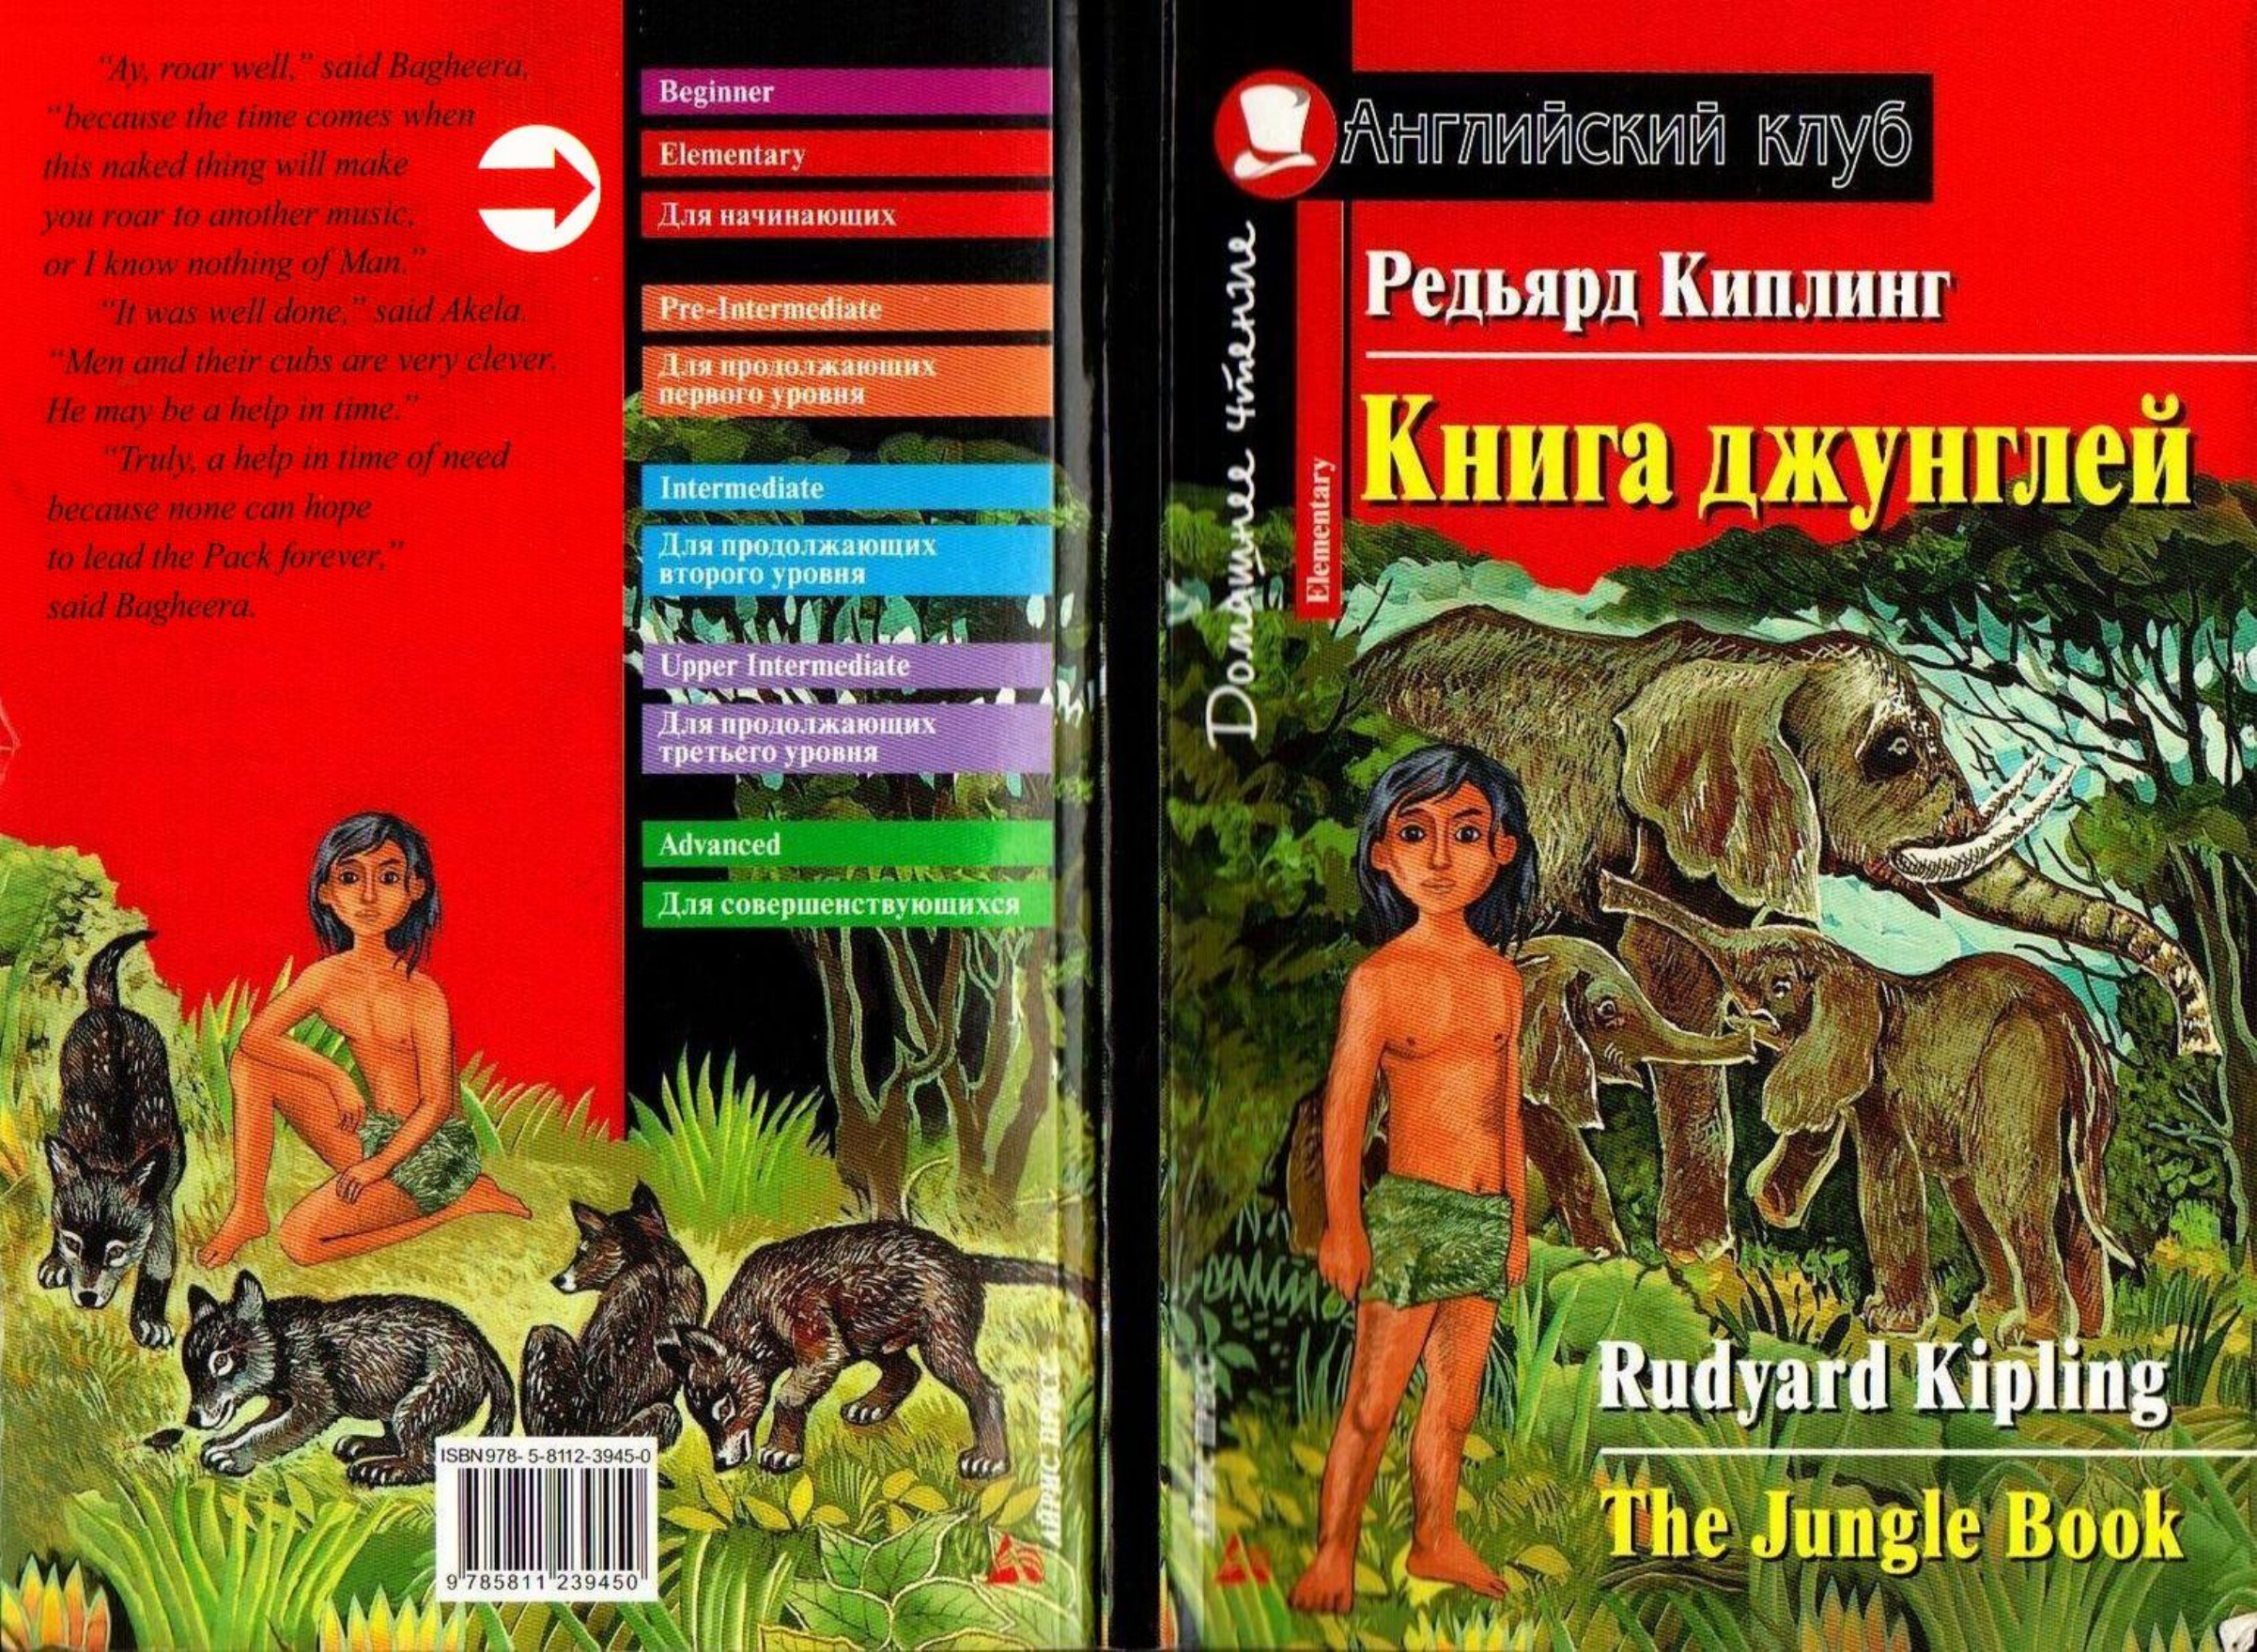 Адаптированные книги по уровням. Киплинг "Маугли". Редьярд Киплинг книга джунглей. Книга джунглей Редьярд Киплинг книга. Английский клуб книга джунглей.